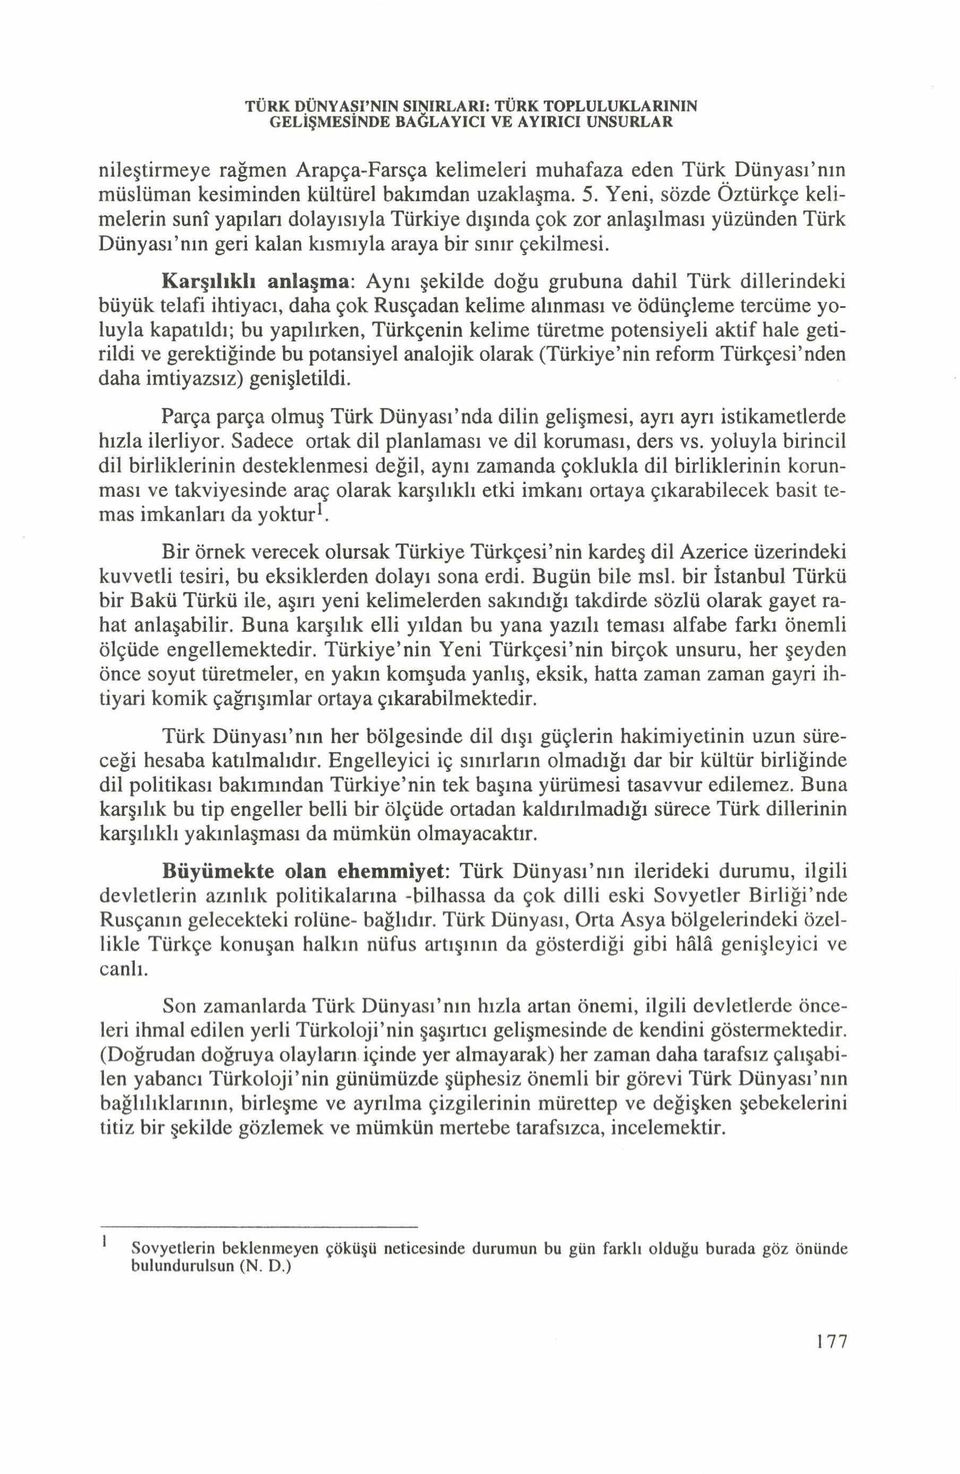 K arşılıklı anlaşma: Aynı şekilde doğu grubuna dahil Türk dillerindeki büyük telafi ihtiyacı, daha çok Rusçadan kelime alınması ve ödünçleme tercüme yoluyla kapatıldı; bu yapılırken, Türkçenin kelime